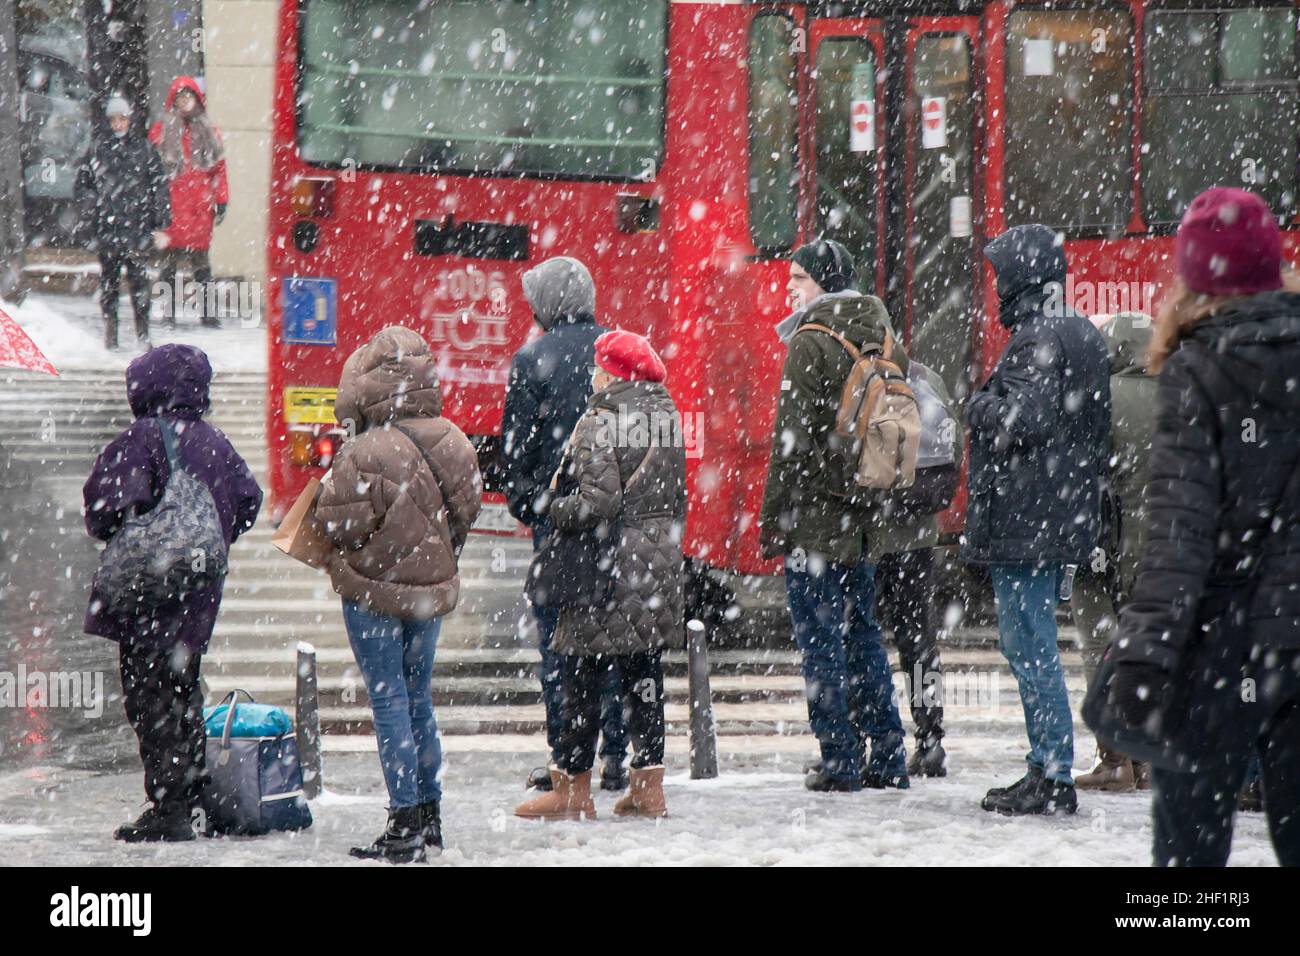 Belgrado, Serbia - 11 de enero de 2022: Personas esperando en el cruce de carreteras en una calle nevada de la ciudad durante la fuerte caída de nieve Foto de stock